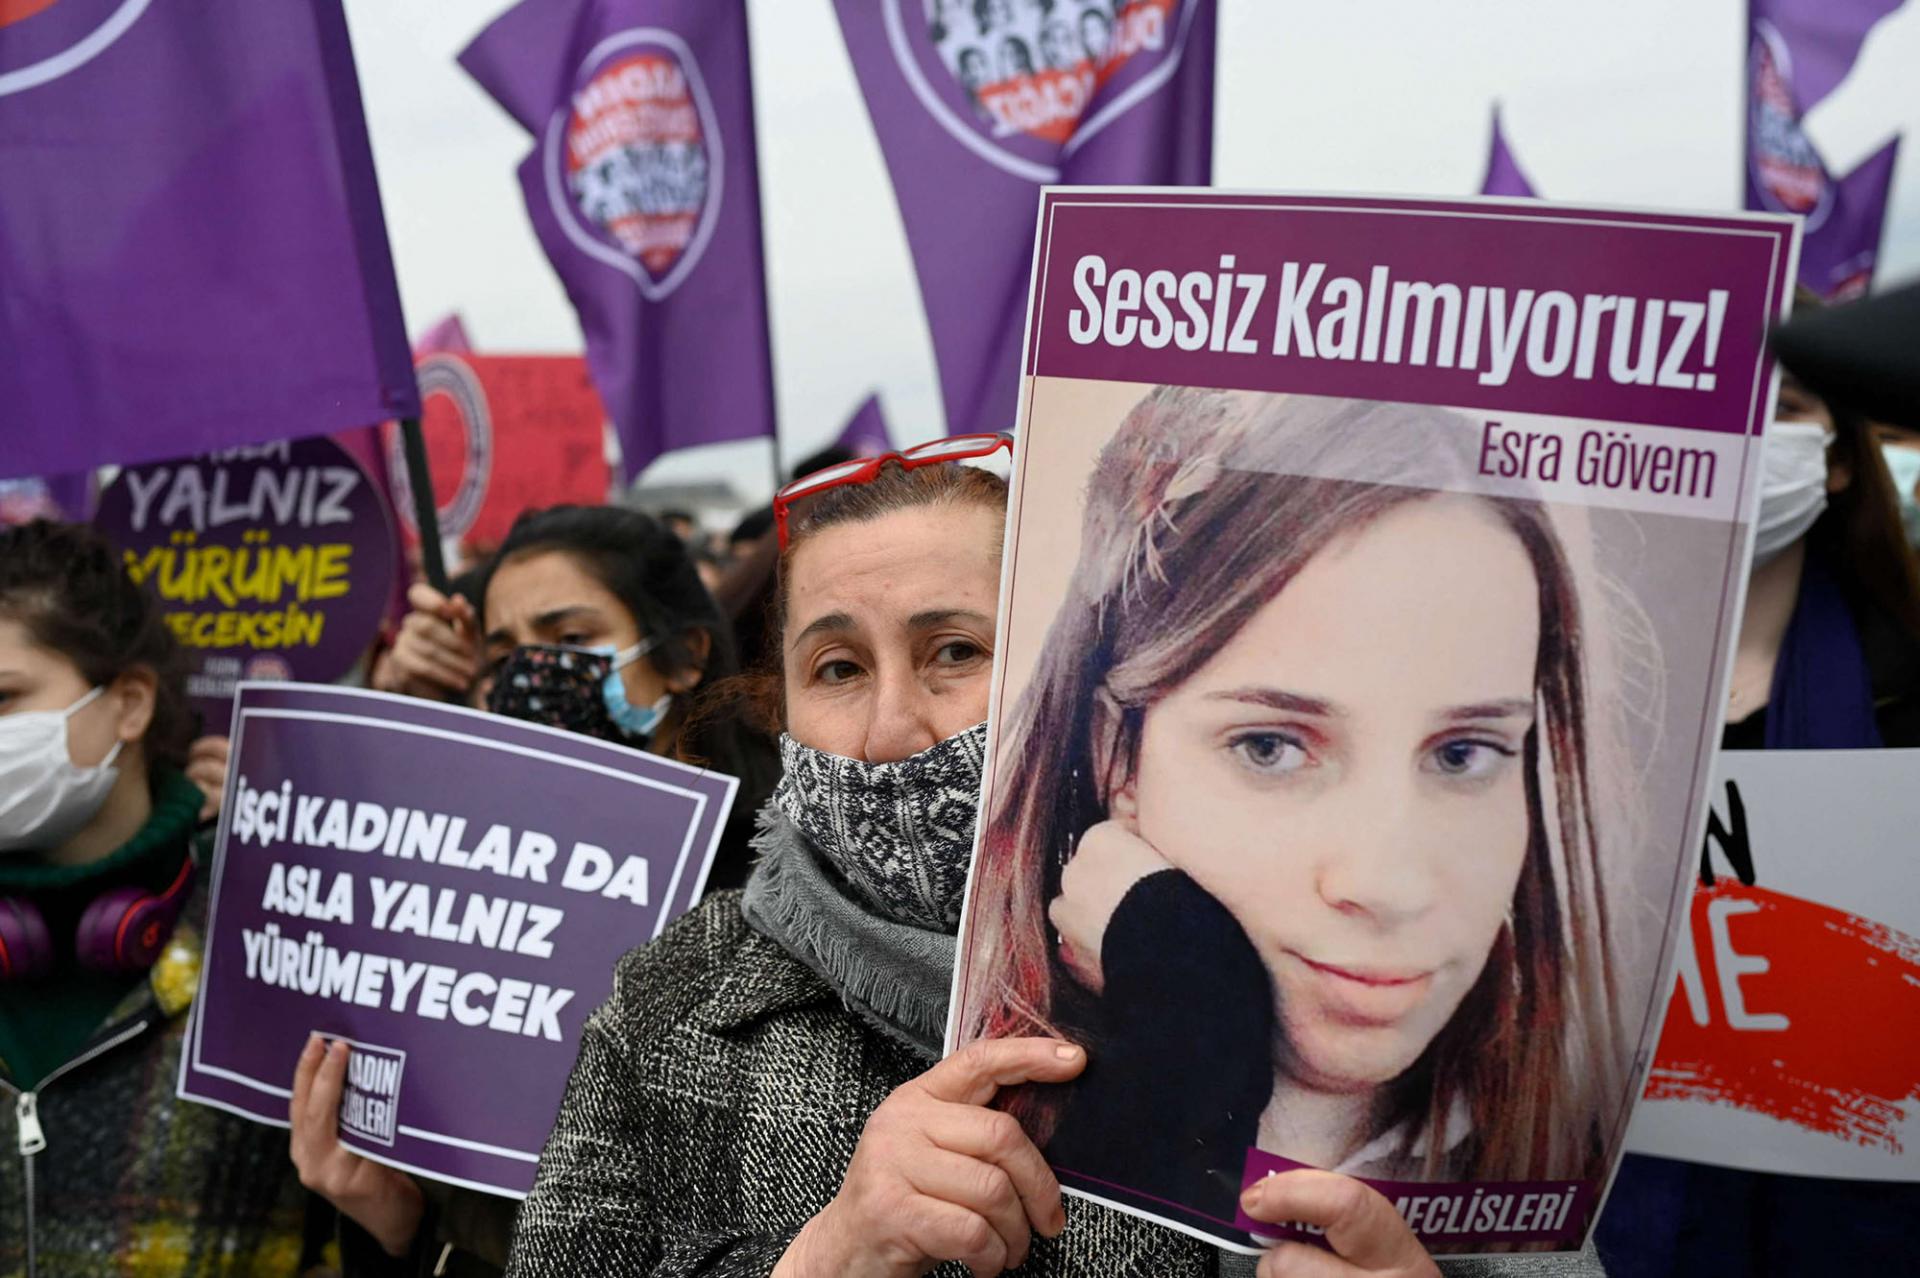 مقتل امرأة واحدة كل يوم في تركيا